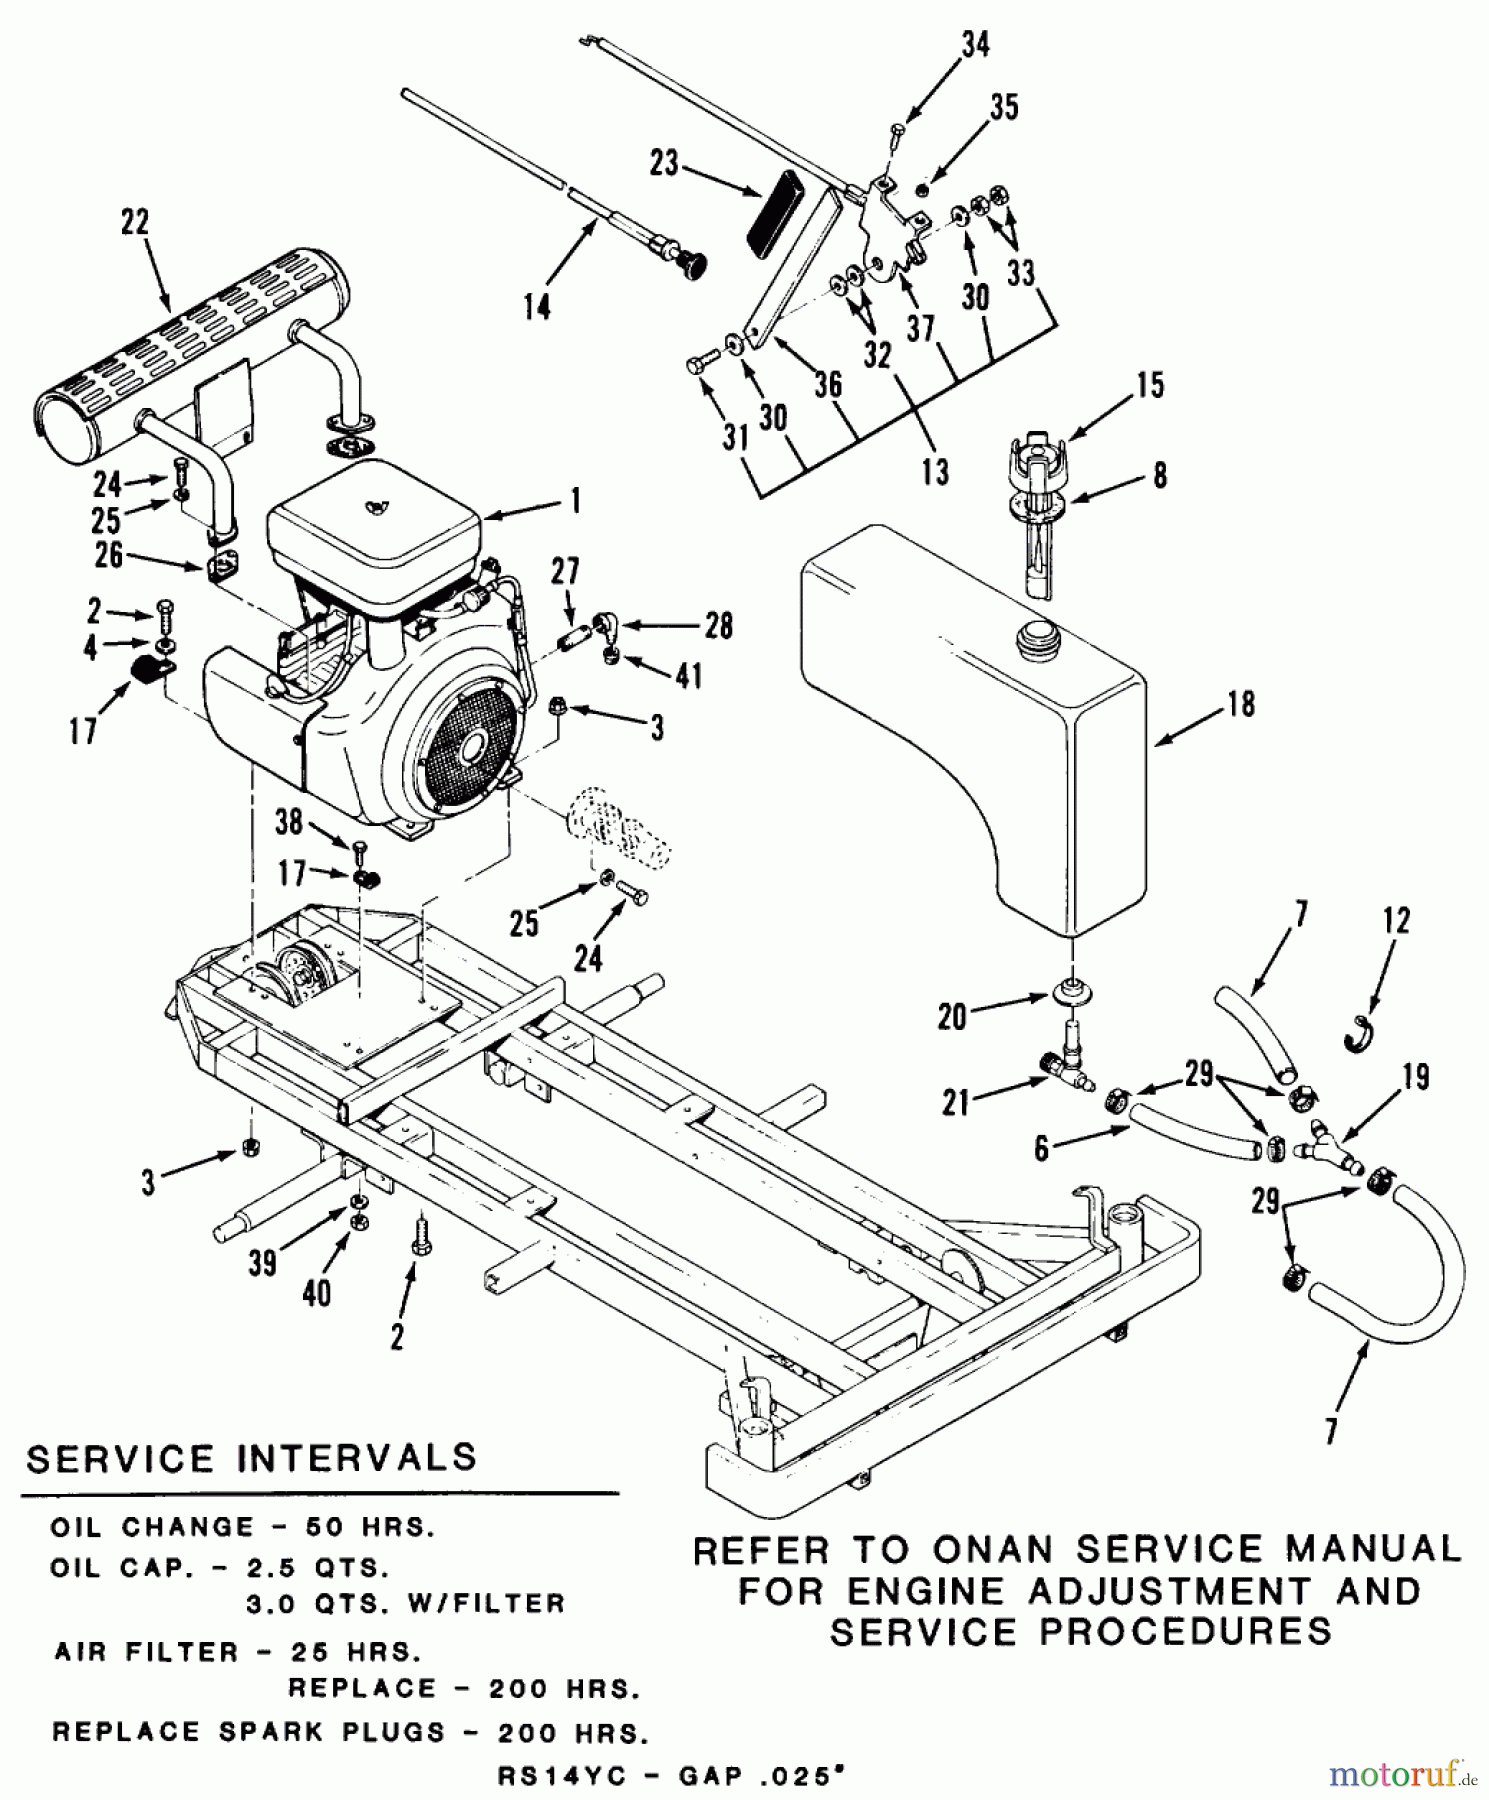  Toro Neu Mowers, Zero-Turn Z1-24OE02 (724-Z) - Toro 724-Z Tractor, 1989 SECTION 3-ENGINE AND FUEL SYSTEMS